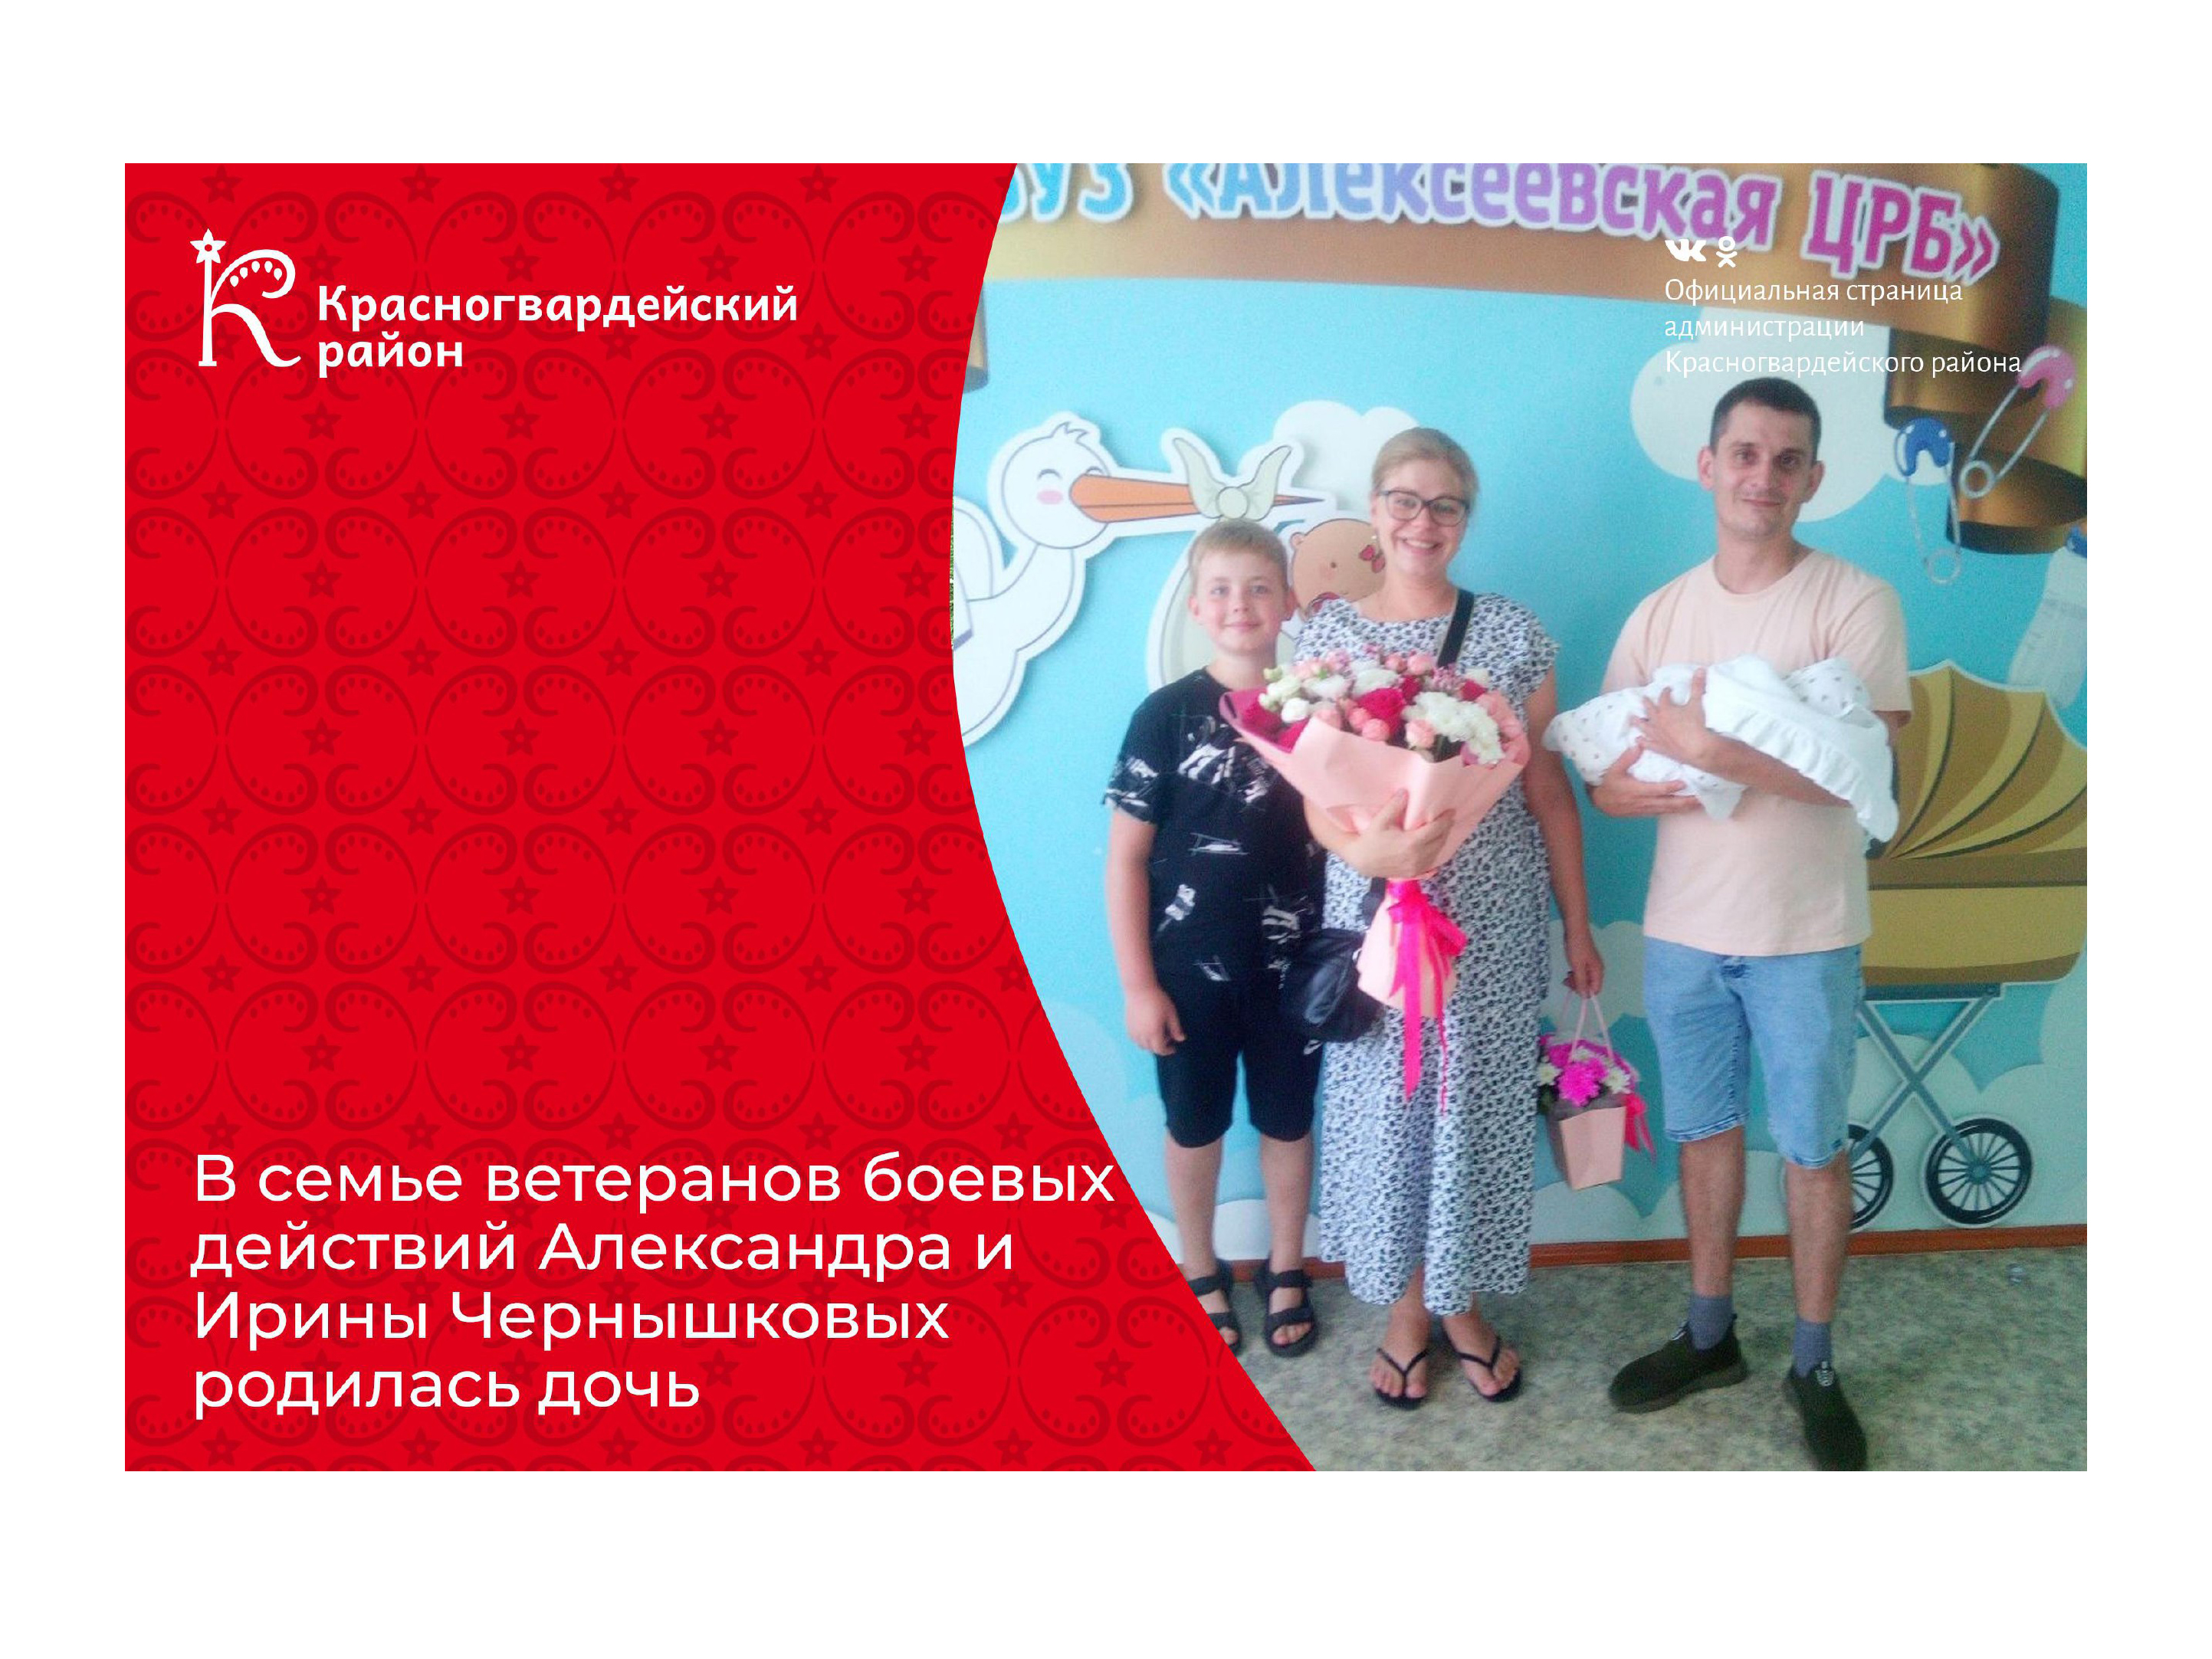 В семье ветеранов боевых действий Александра и Ирины Чернышковых родилась дочь.